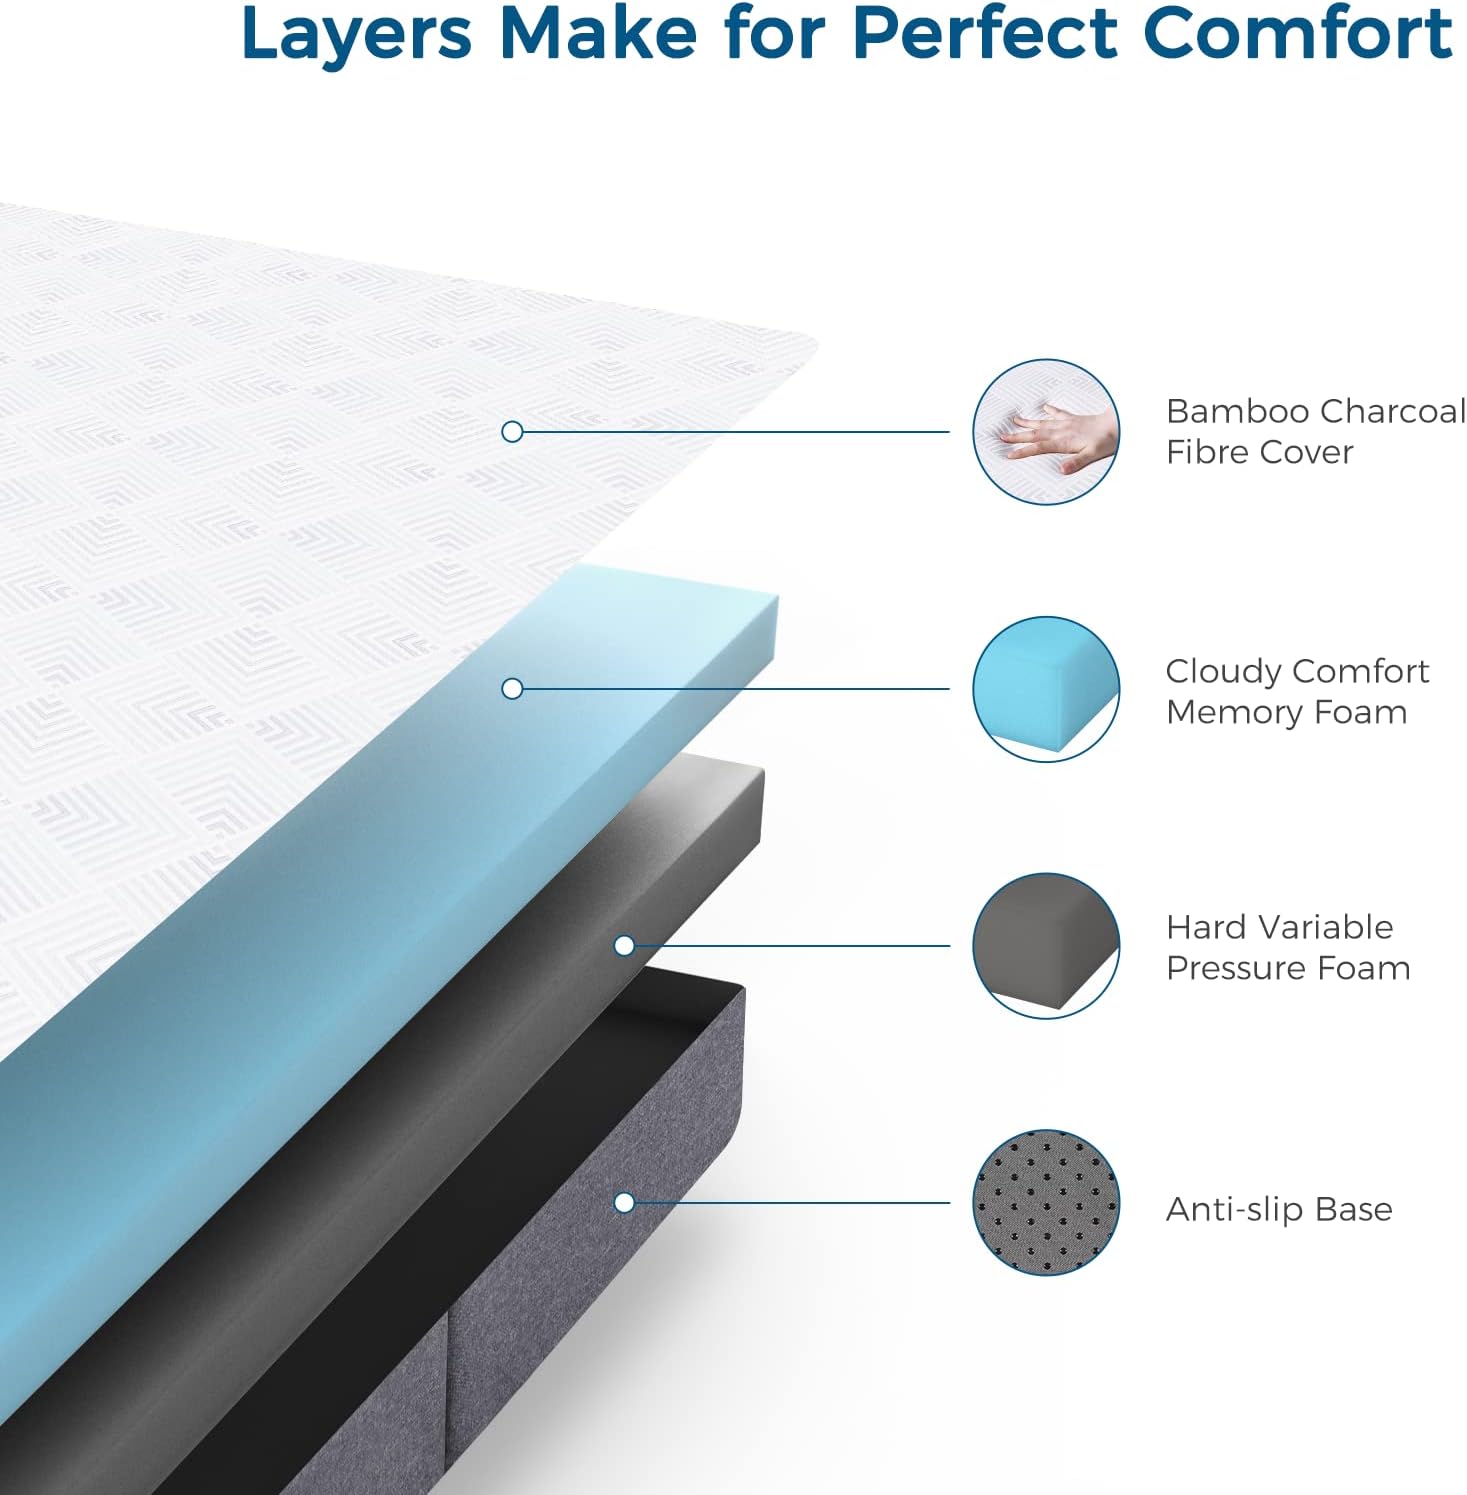 Inofia Folding Mattress Medium Firm Feel Floor Cushion Easy Storage